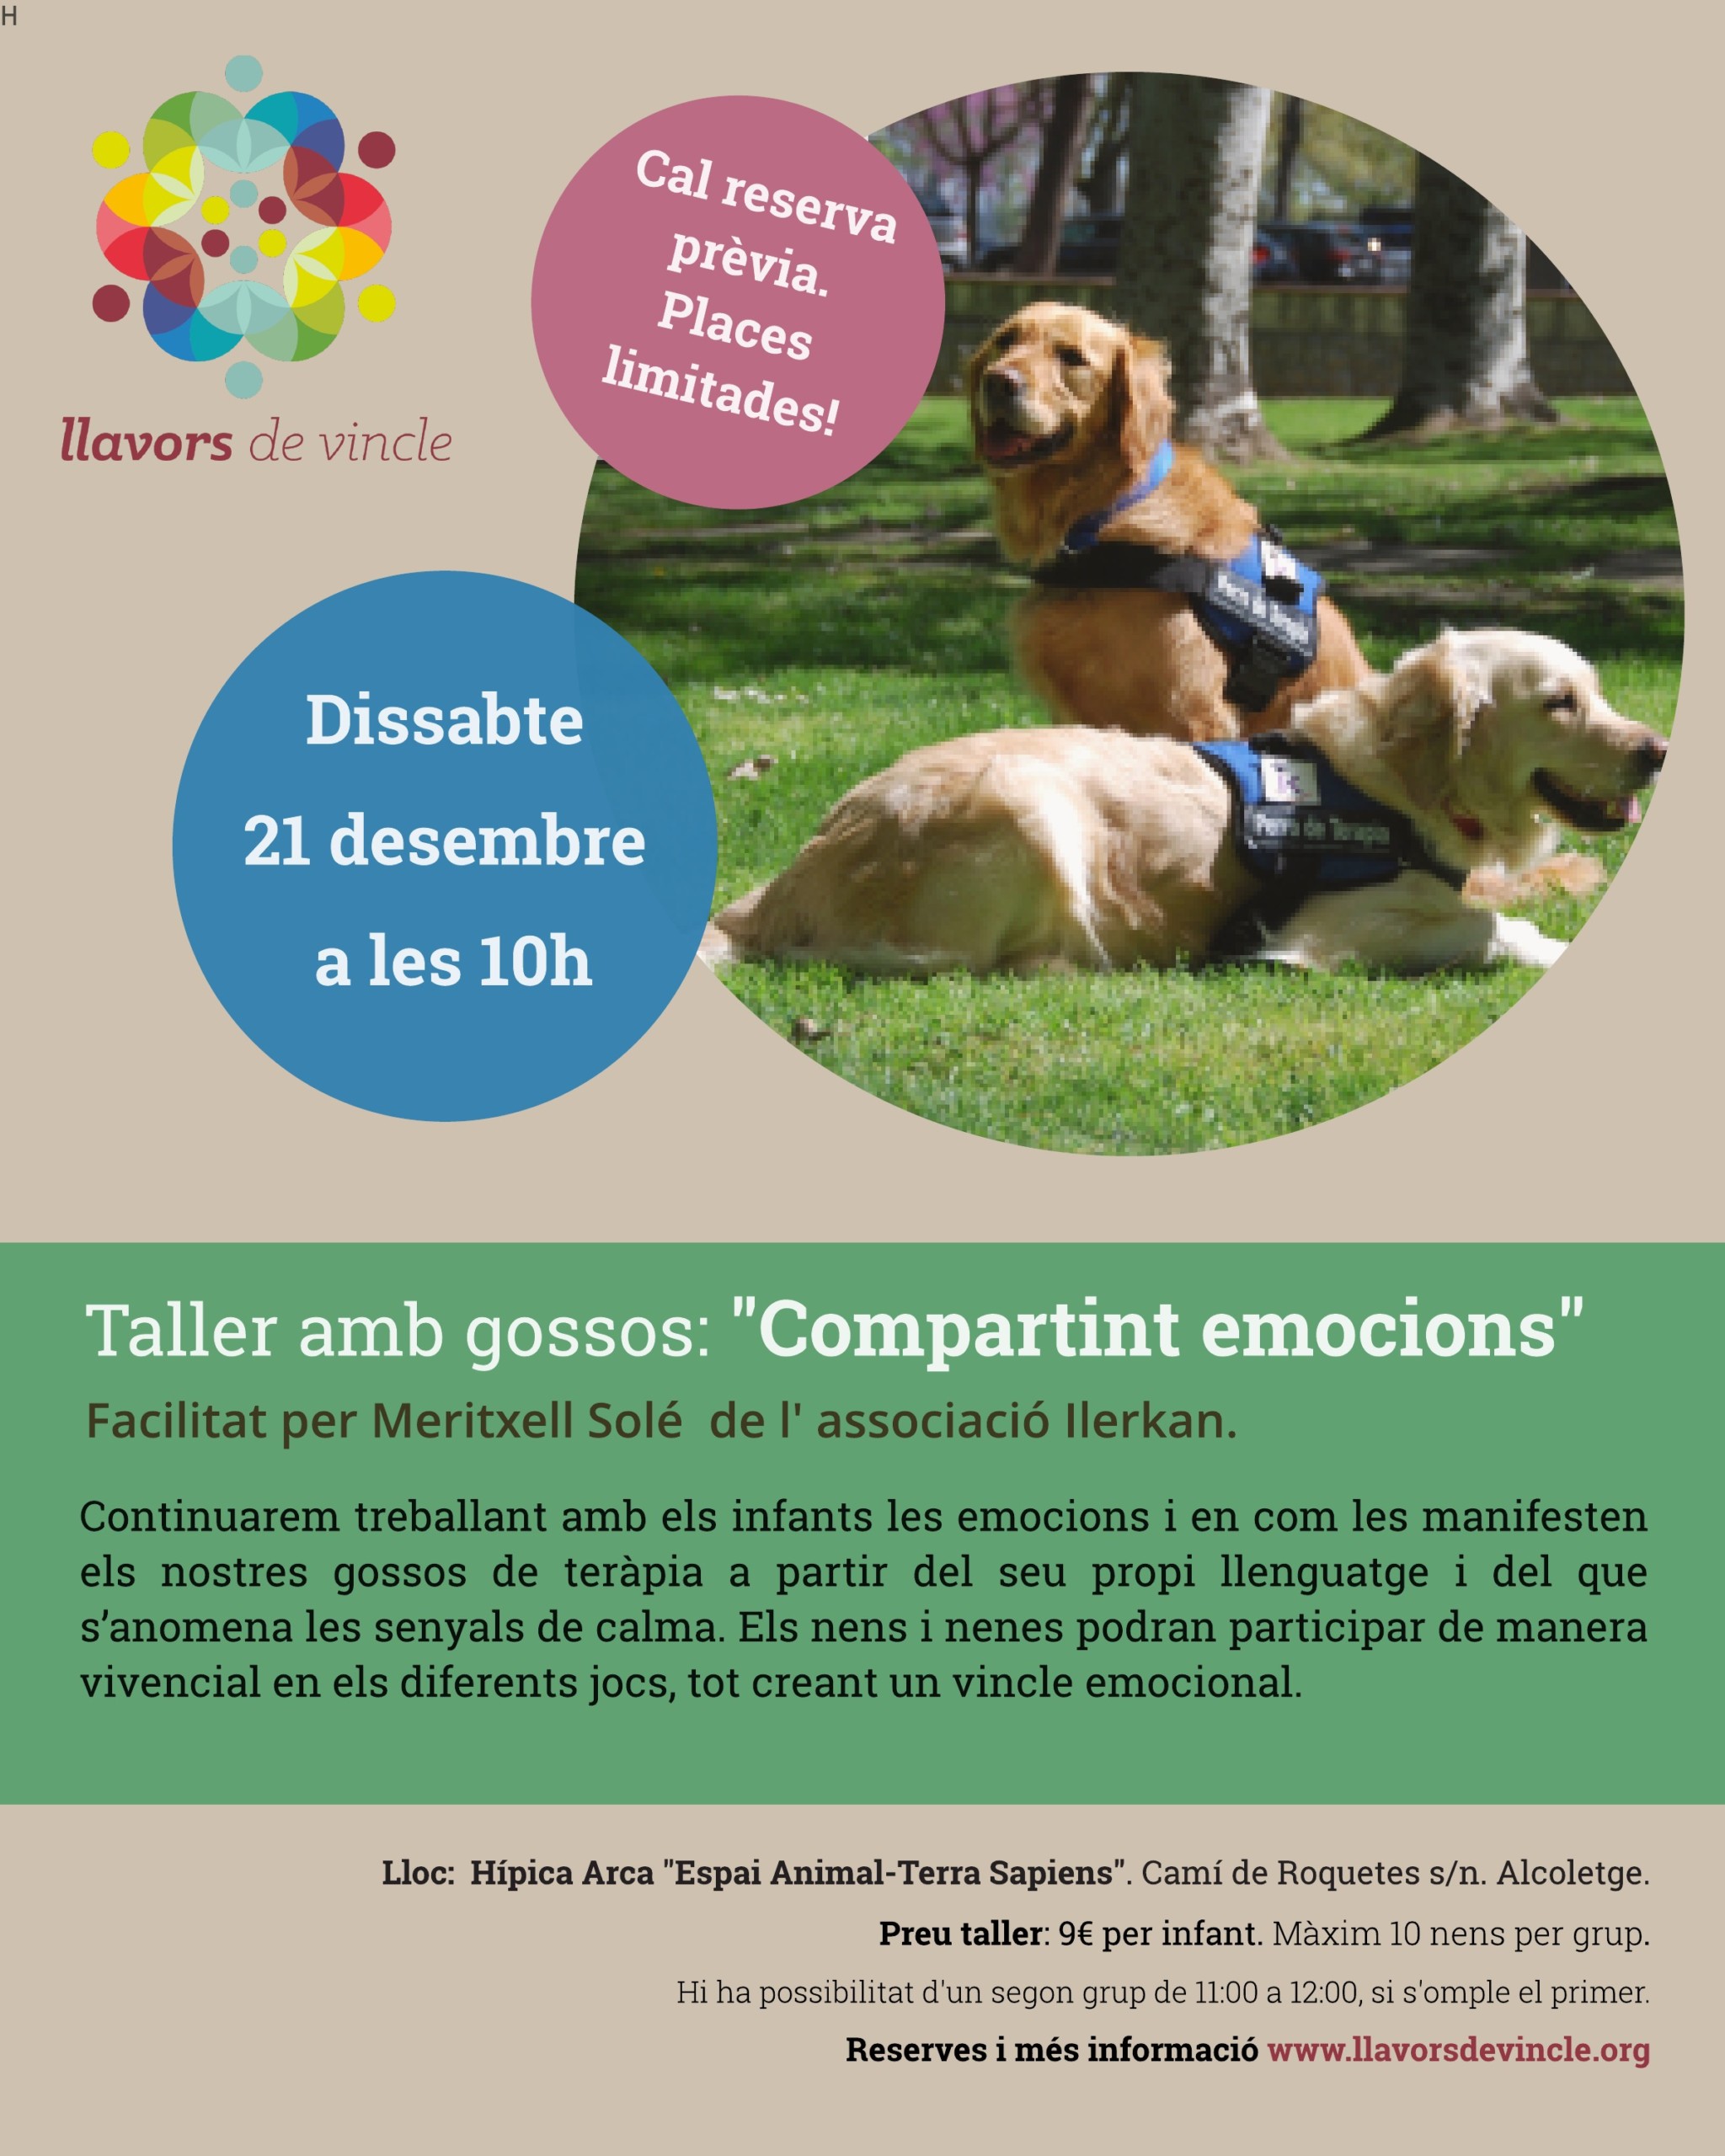 Taller amb gossos: "Compartint emocions"